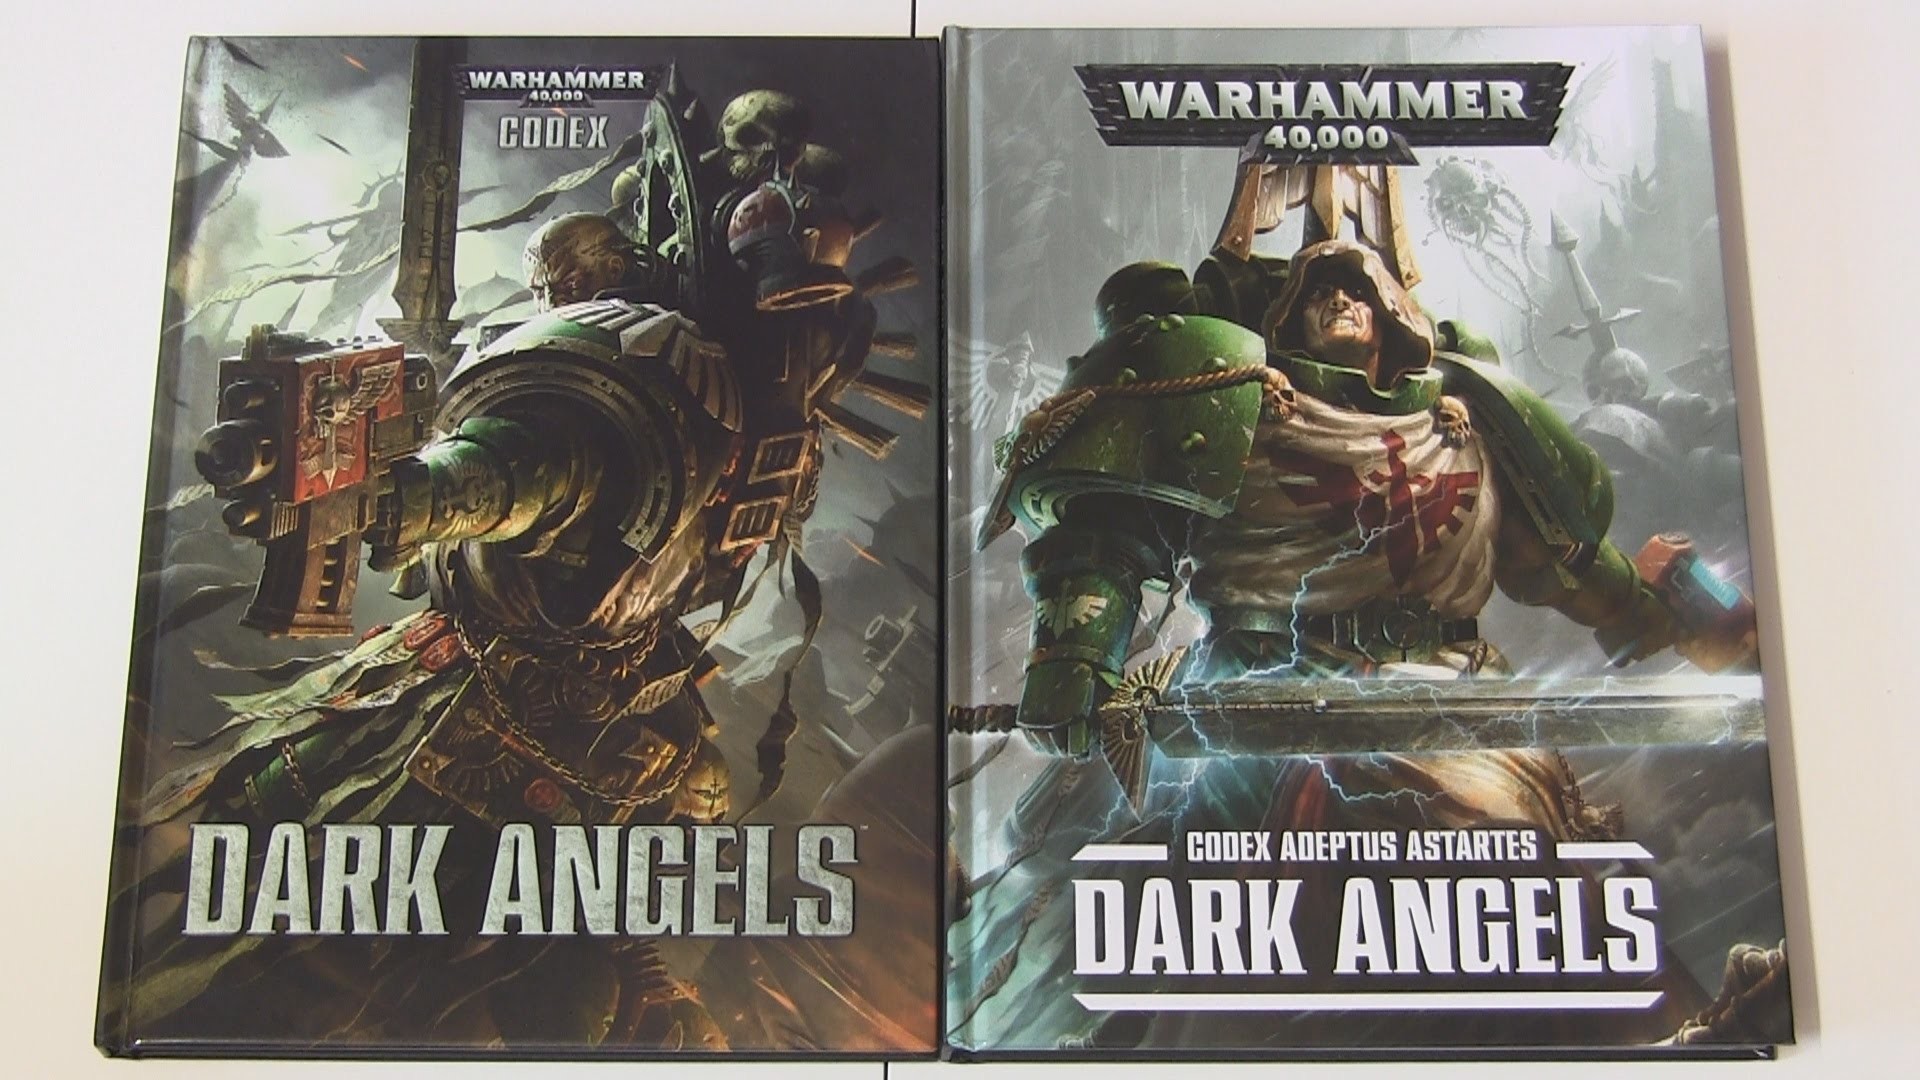 1920x1080 New Dark Angels Codex (Warhammer 40,000) - Overview